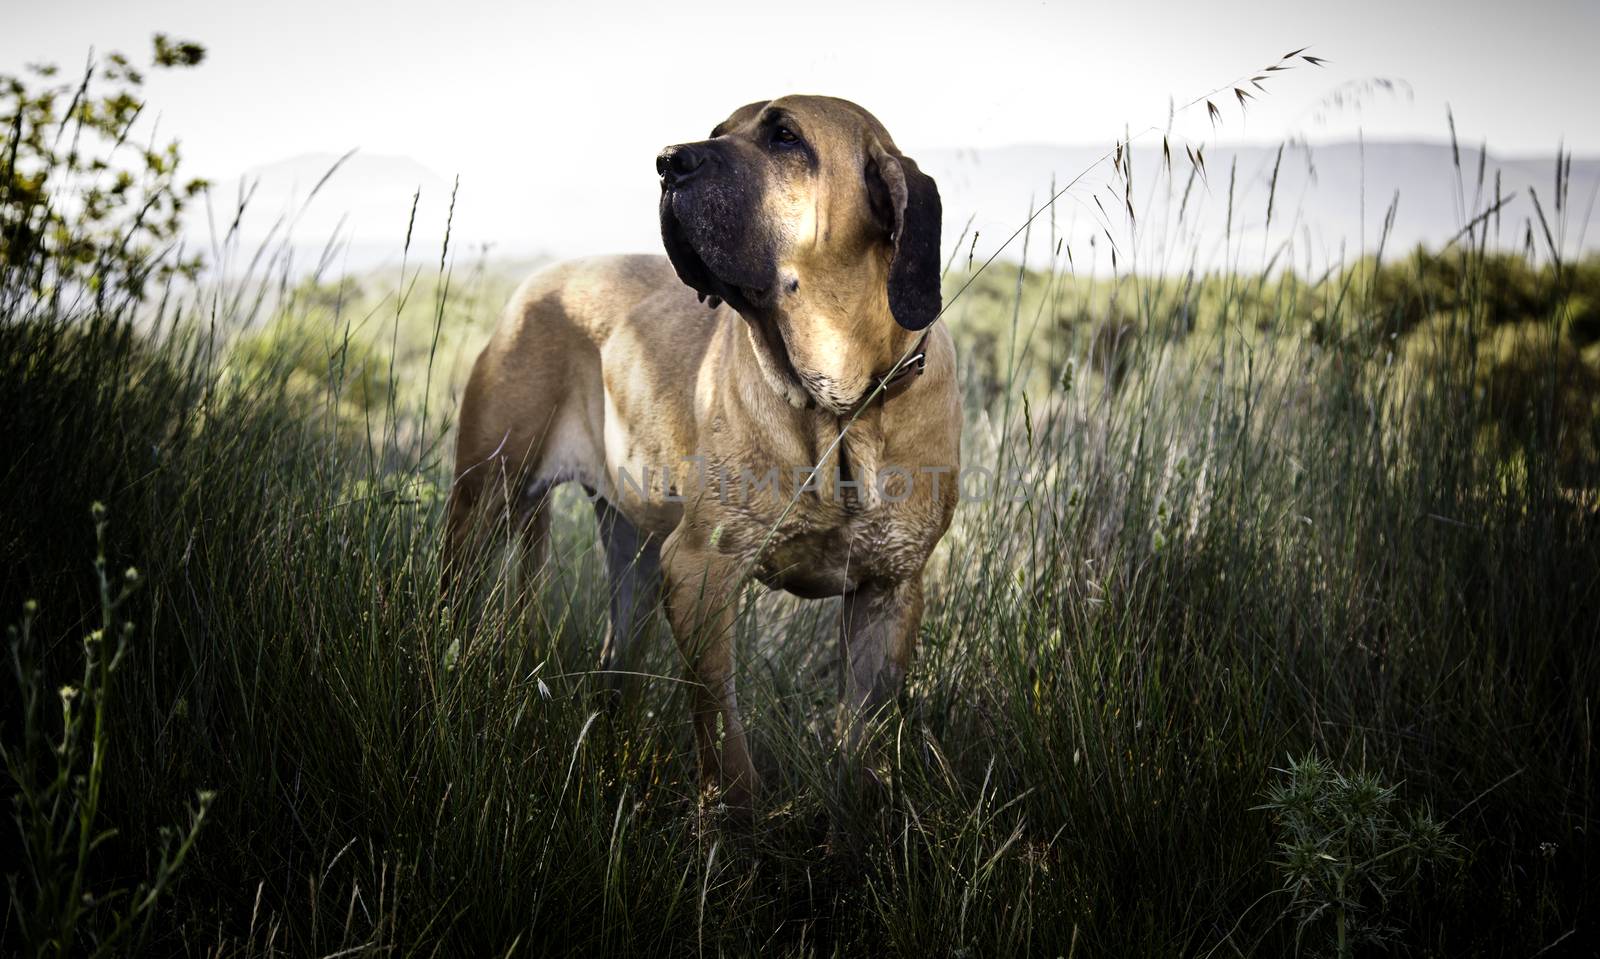 Dog hound in the wild by esebene